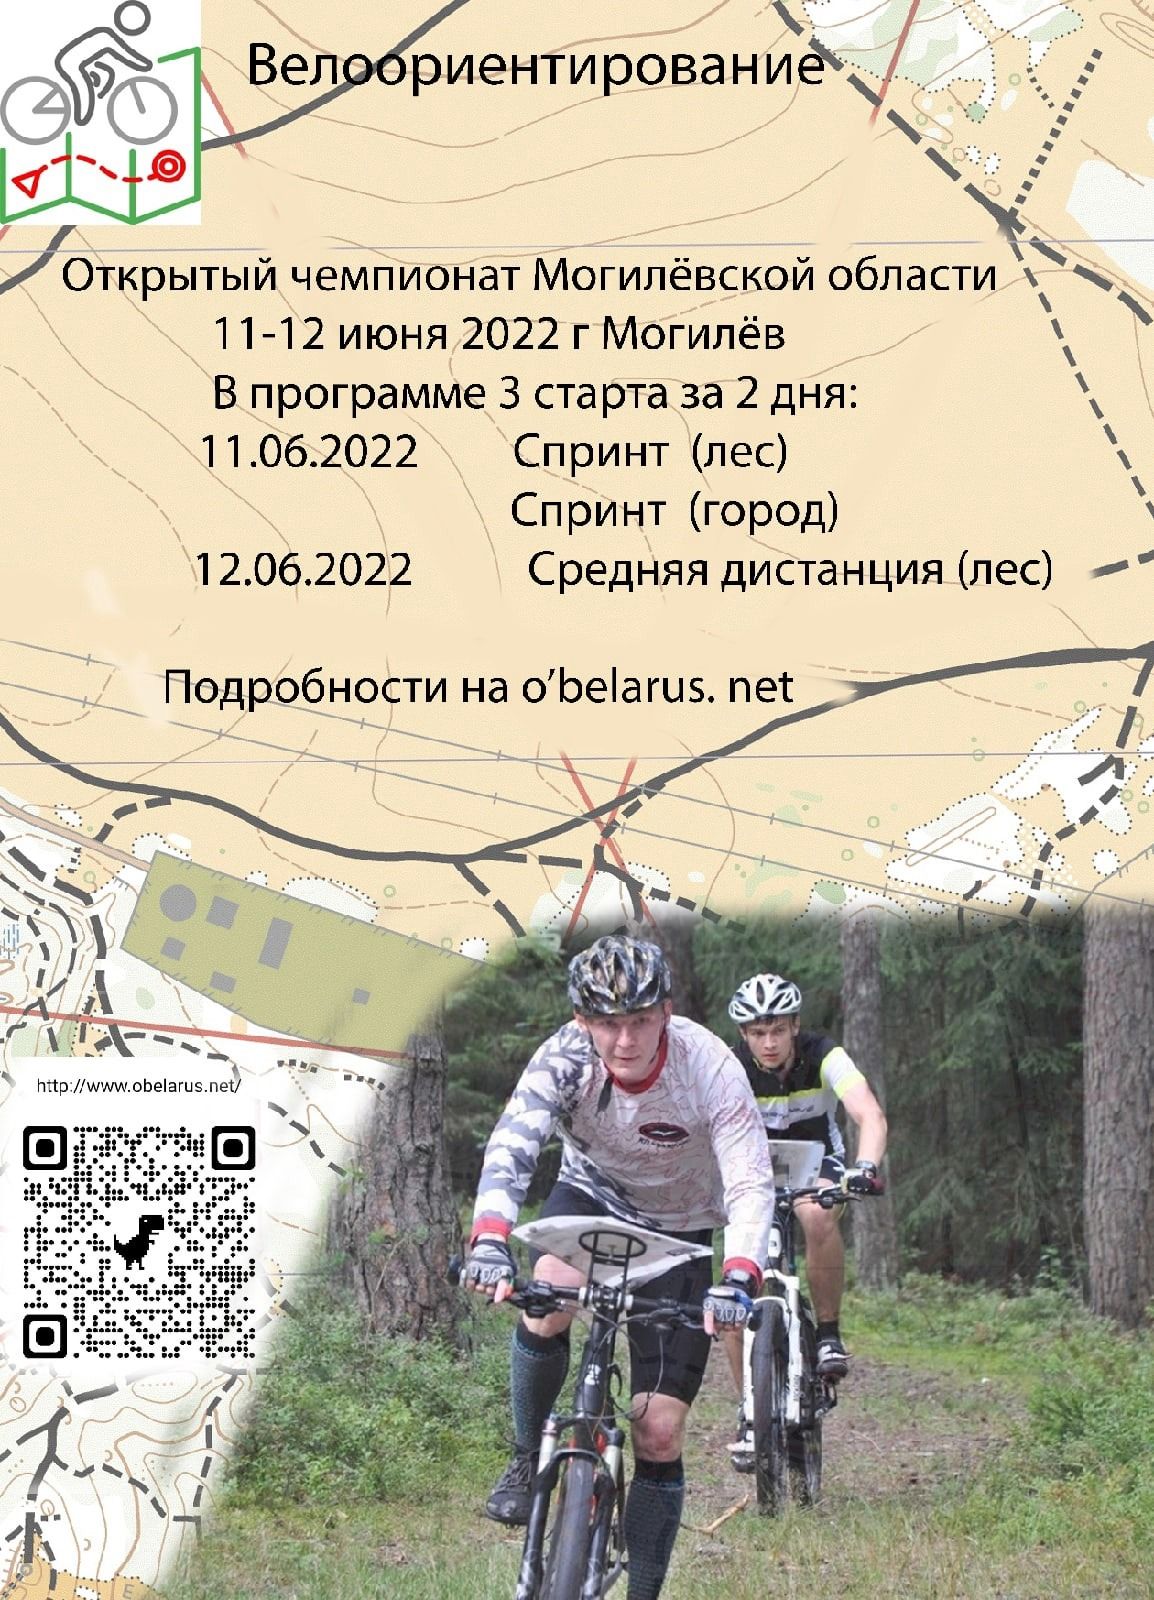 Открытый чемпионат Могилевской области по велоориентированию